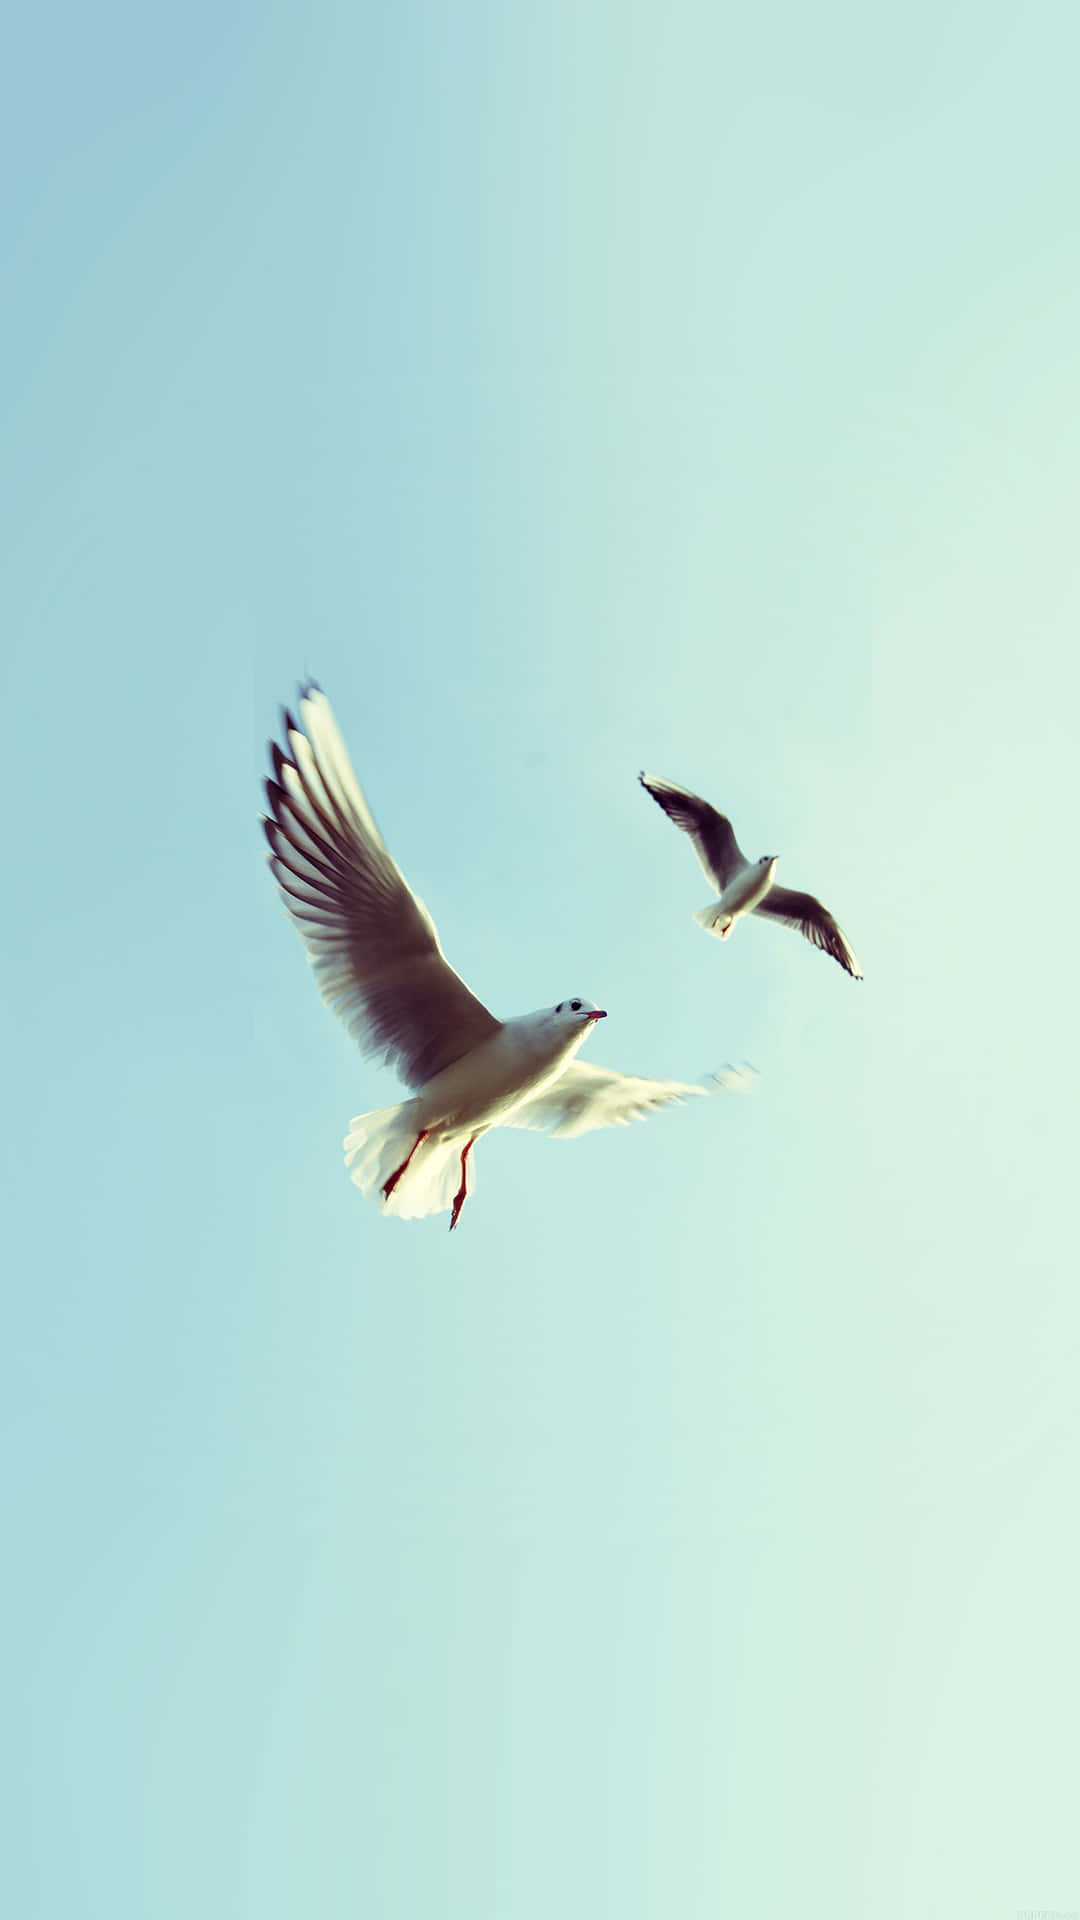 Flying Bird White Seagulls Wallpaper